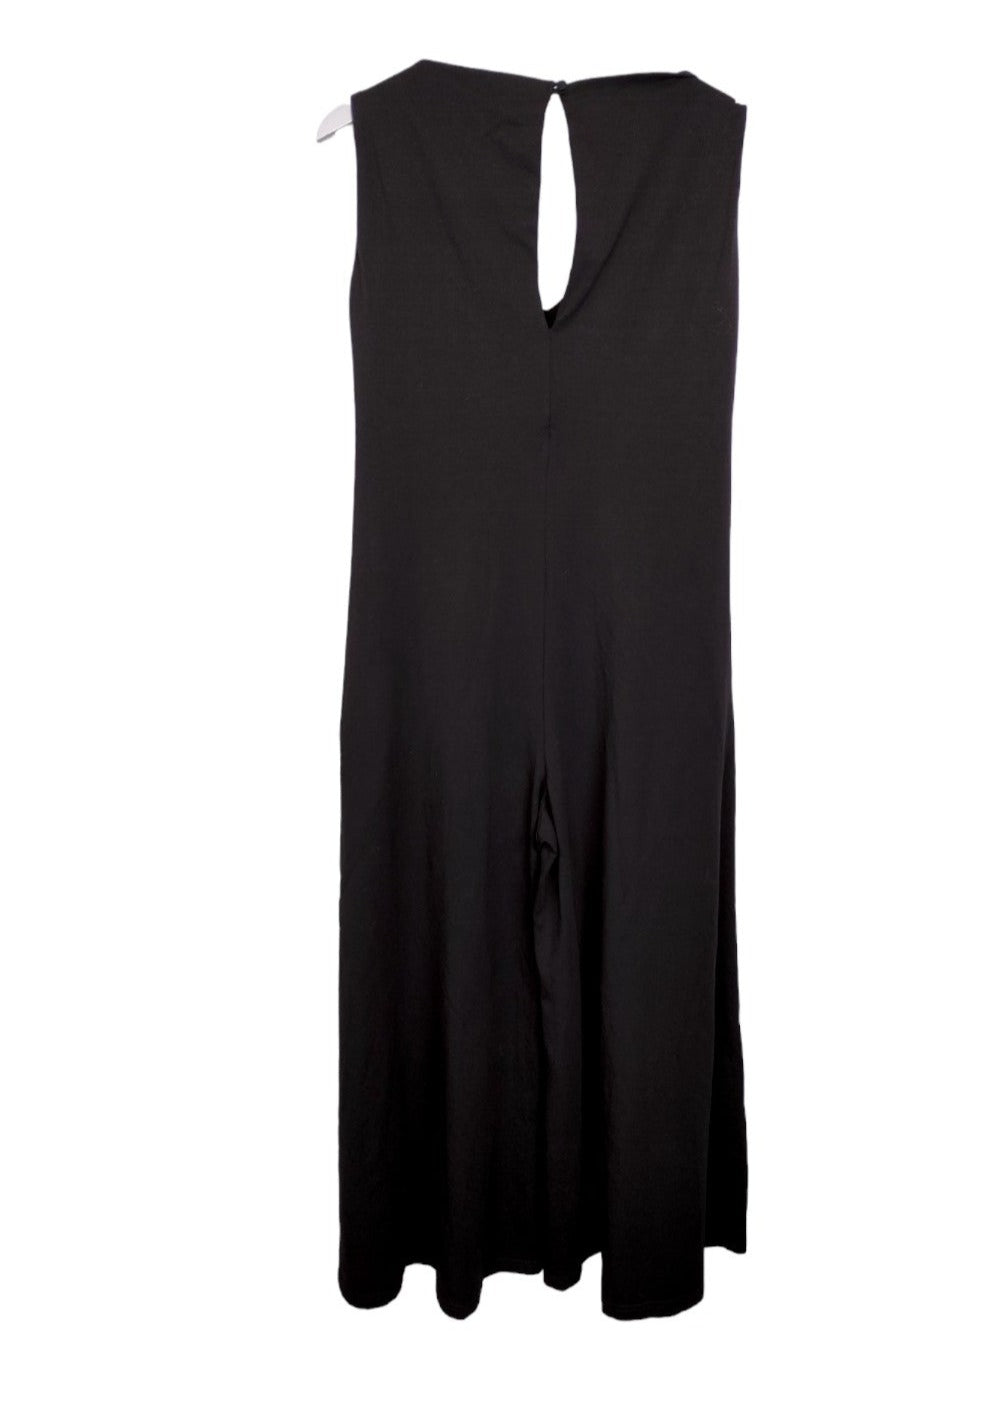 Ολόσωμη, Ελαστική Γυναικεία Φόρμα GAFFER & FLUR σε Μαύρο Χρώμα (Medium)